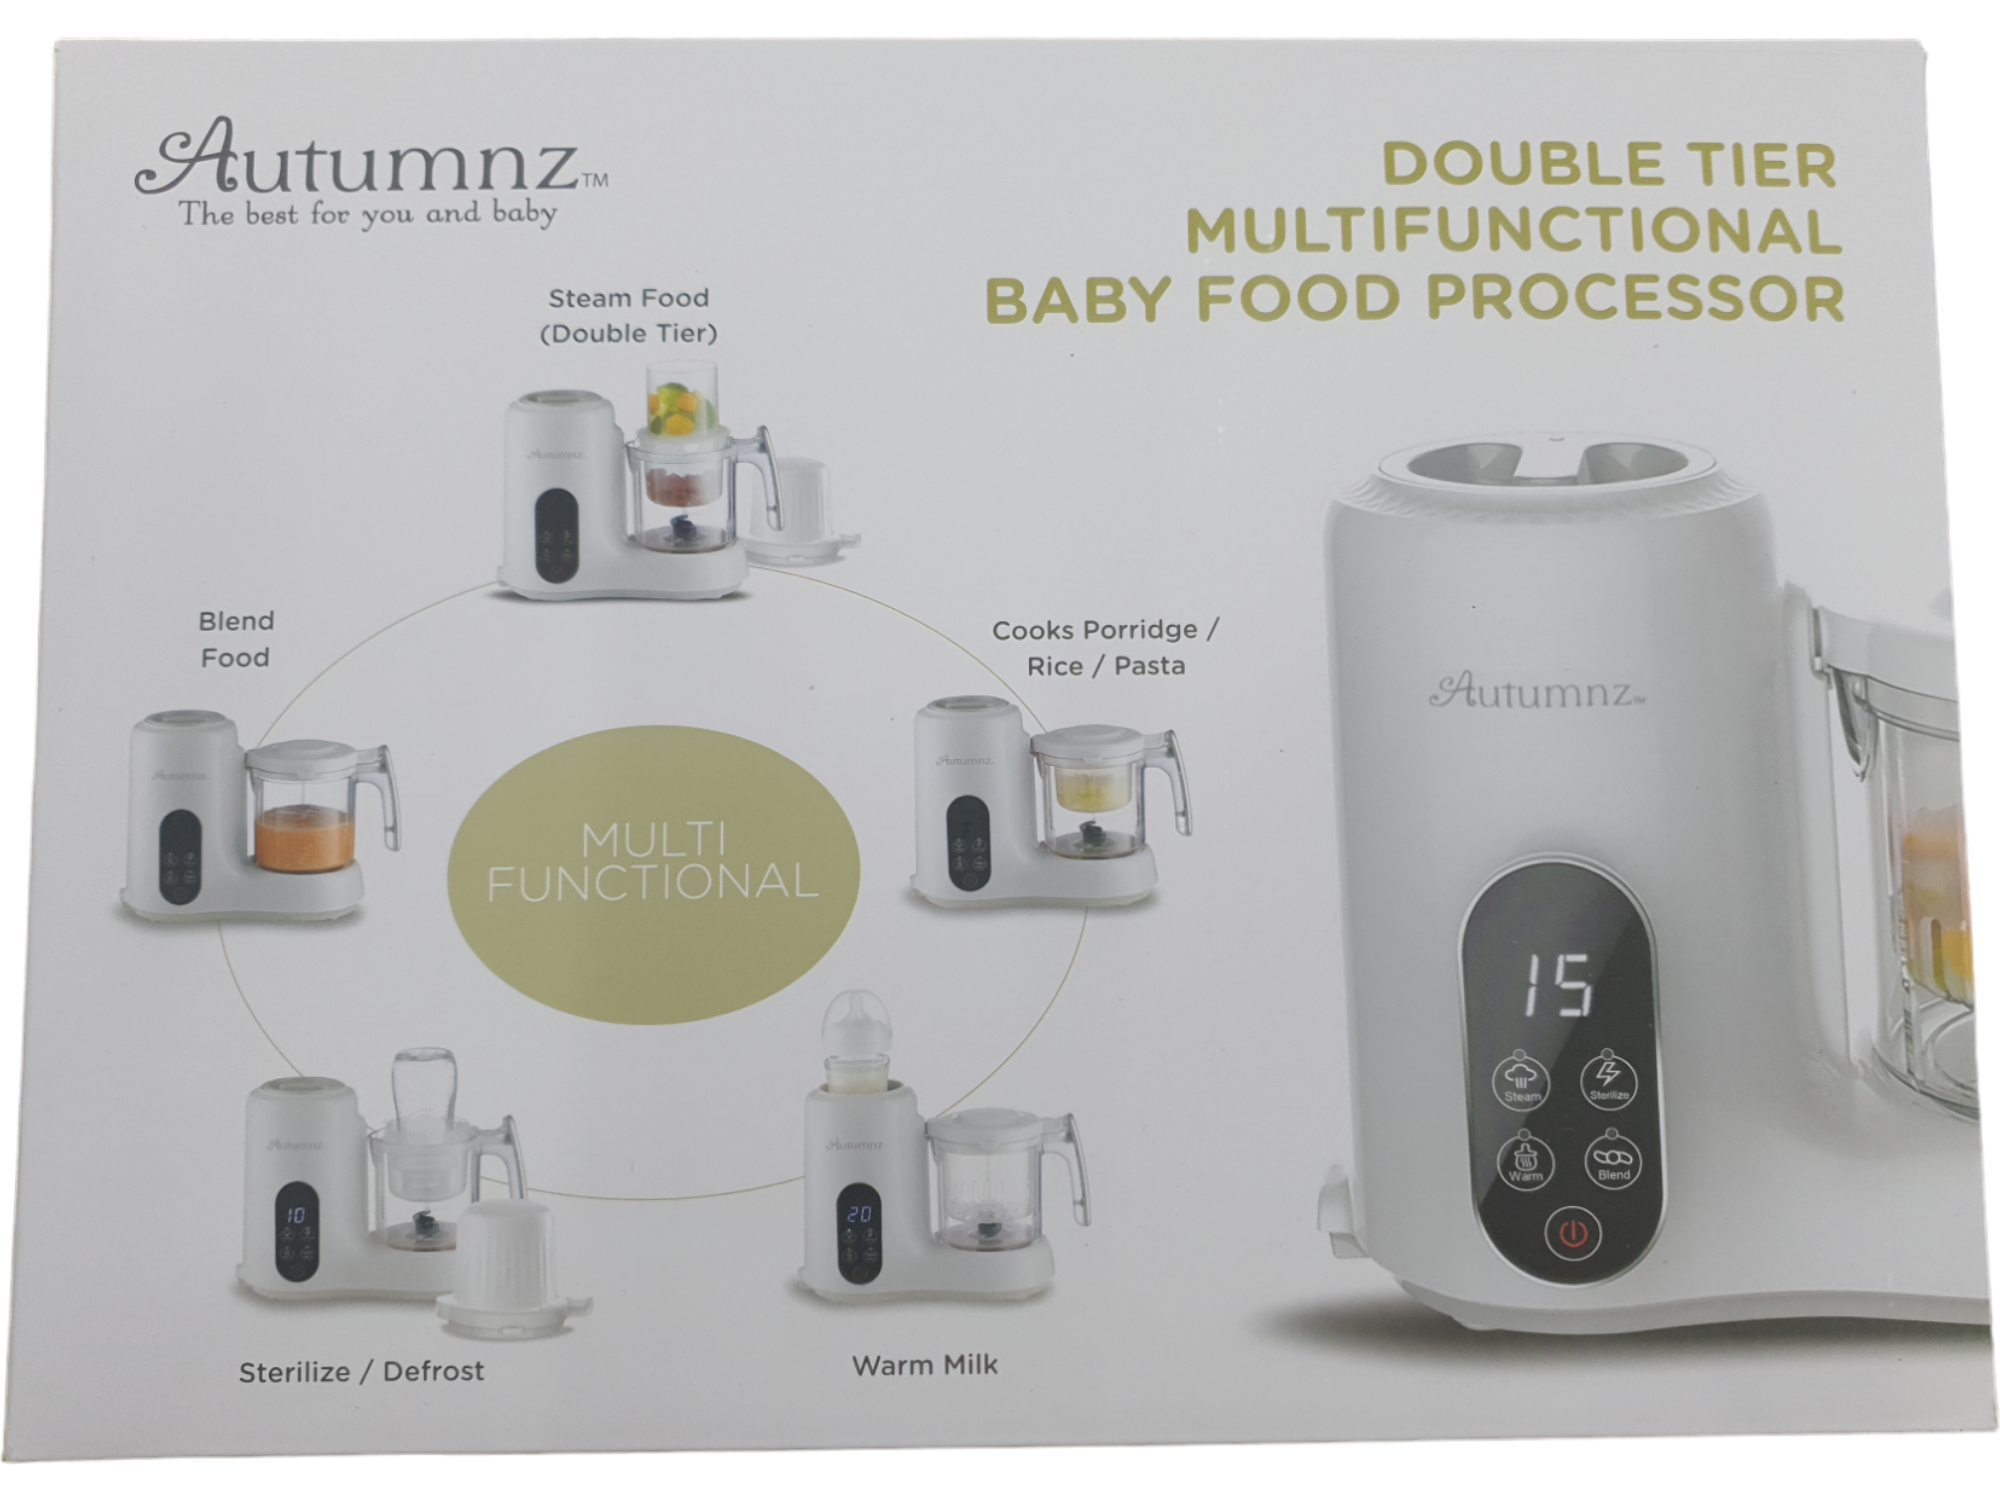 Autumnz Double Tier Multifunctional Baby Food Processor